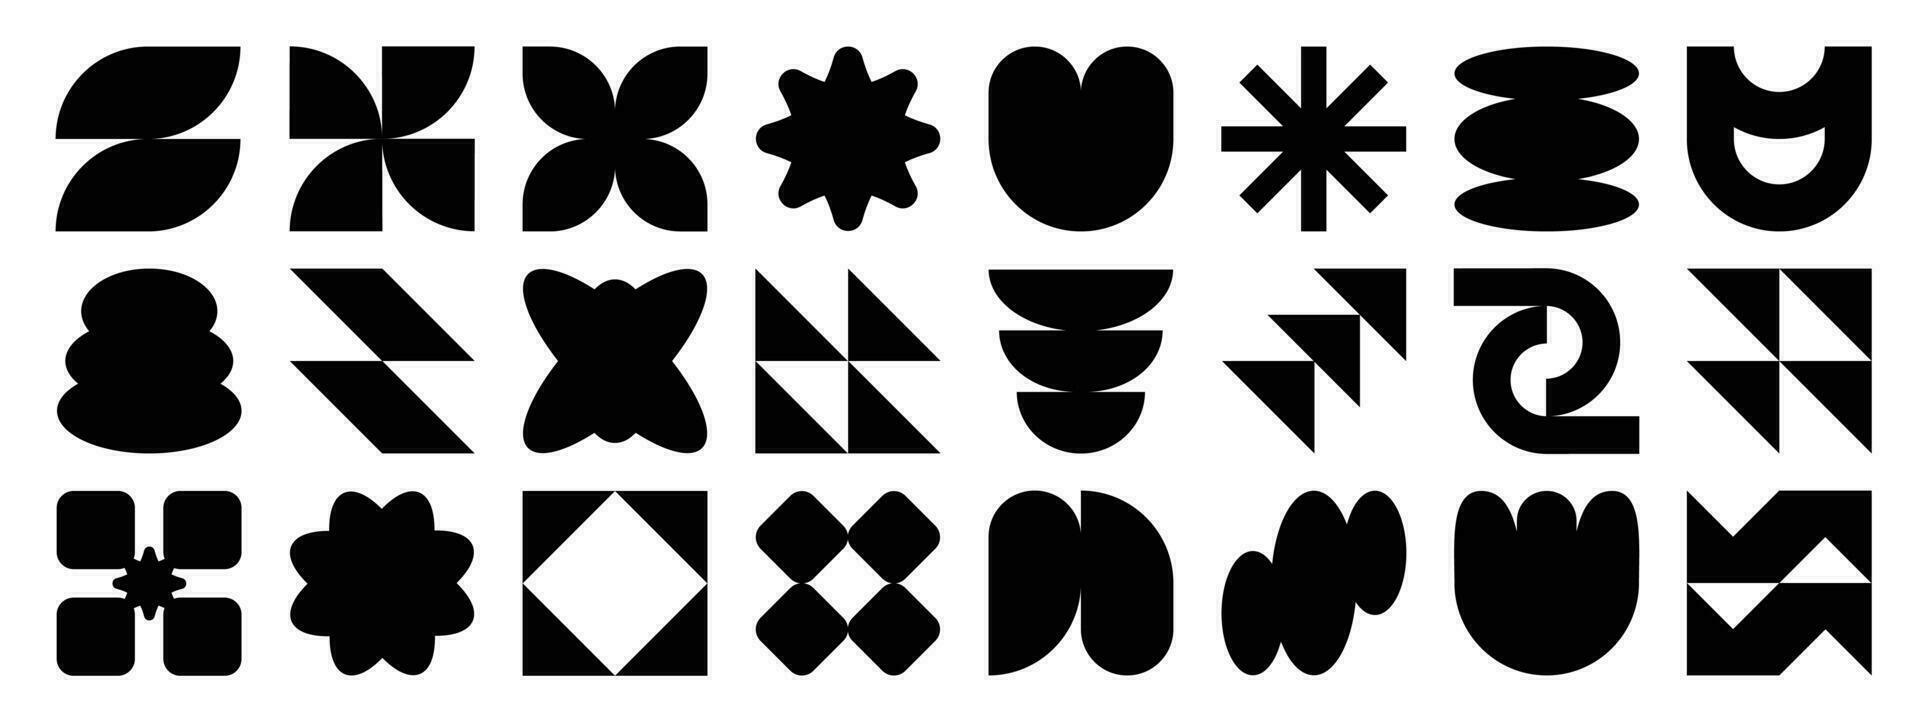 Sammlung von geometrisch Formen auf Weiß Hintergrund. abstrakt schwarz Farbe Symbol Element von Blume, Quadrat, Pixel, funkelnd, anders Formen. Symbol Grafik Design zum Dekoration, Logo, Geschäft, Anzeigen. vektor